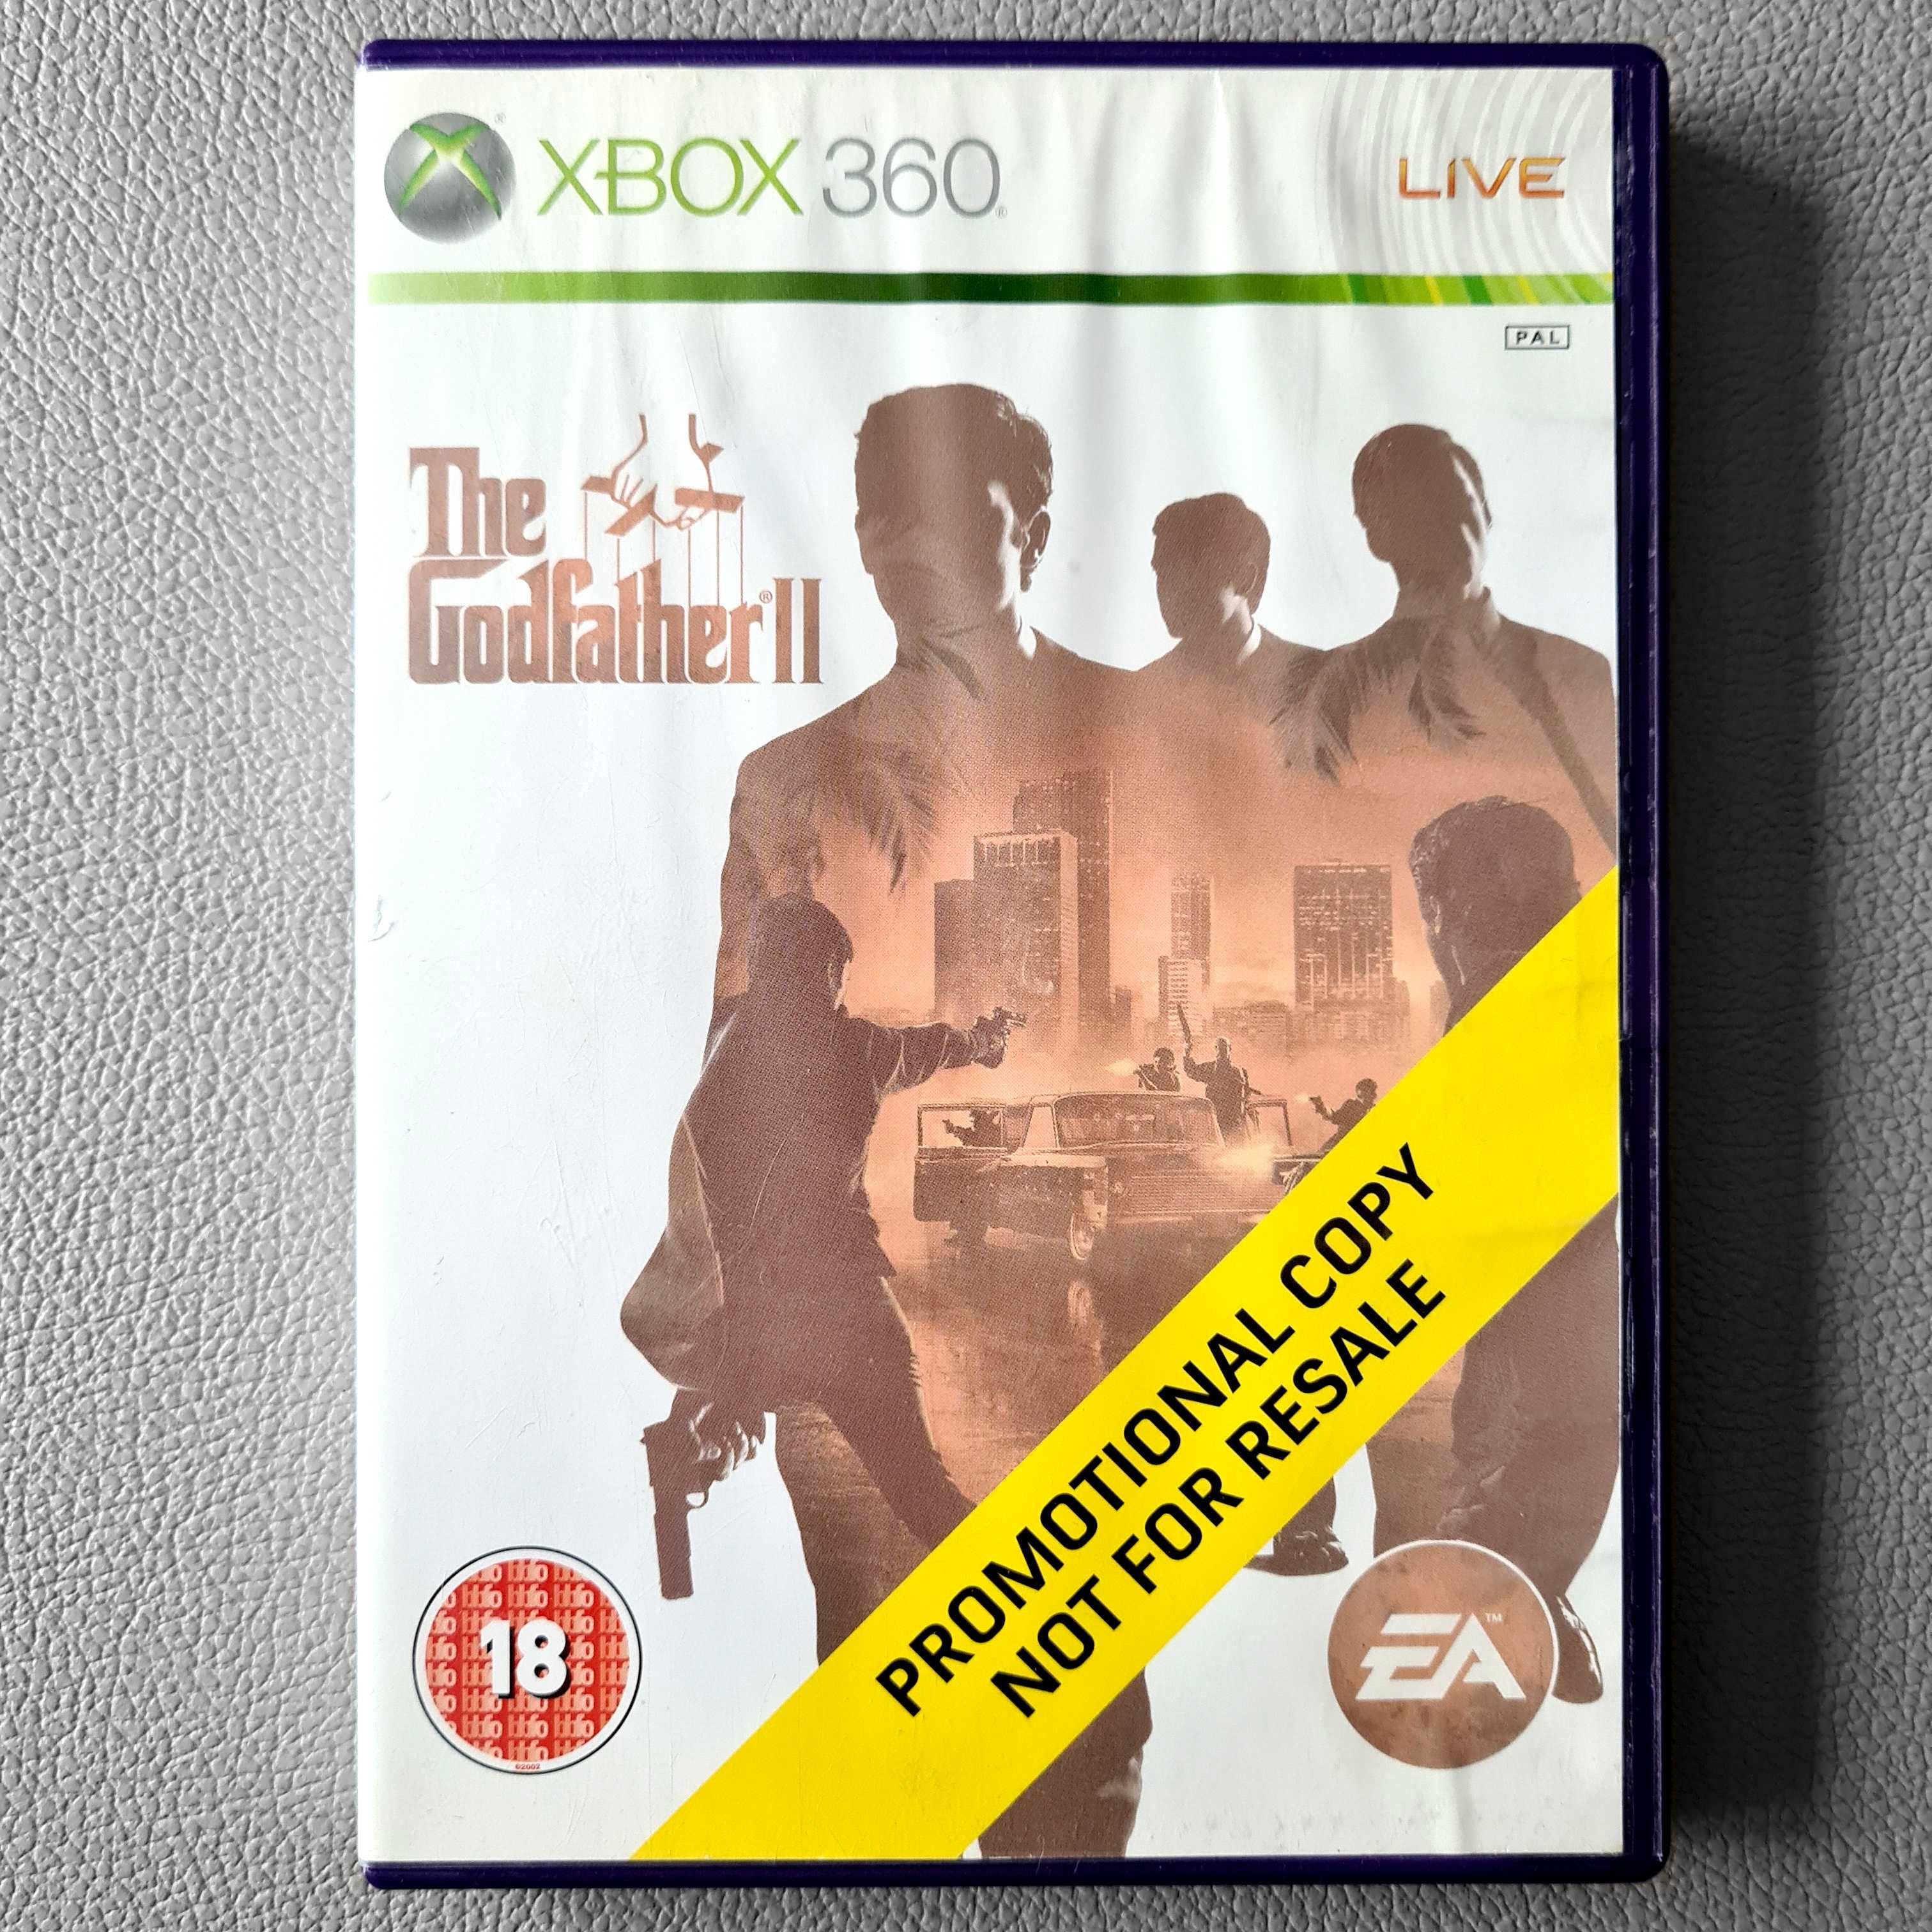 Ojciec Chrzestny 2 PL Xbox 360 Polskie Napisy The Godfather II